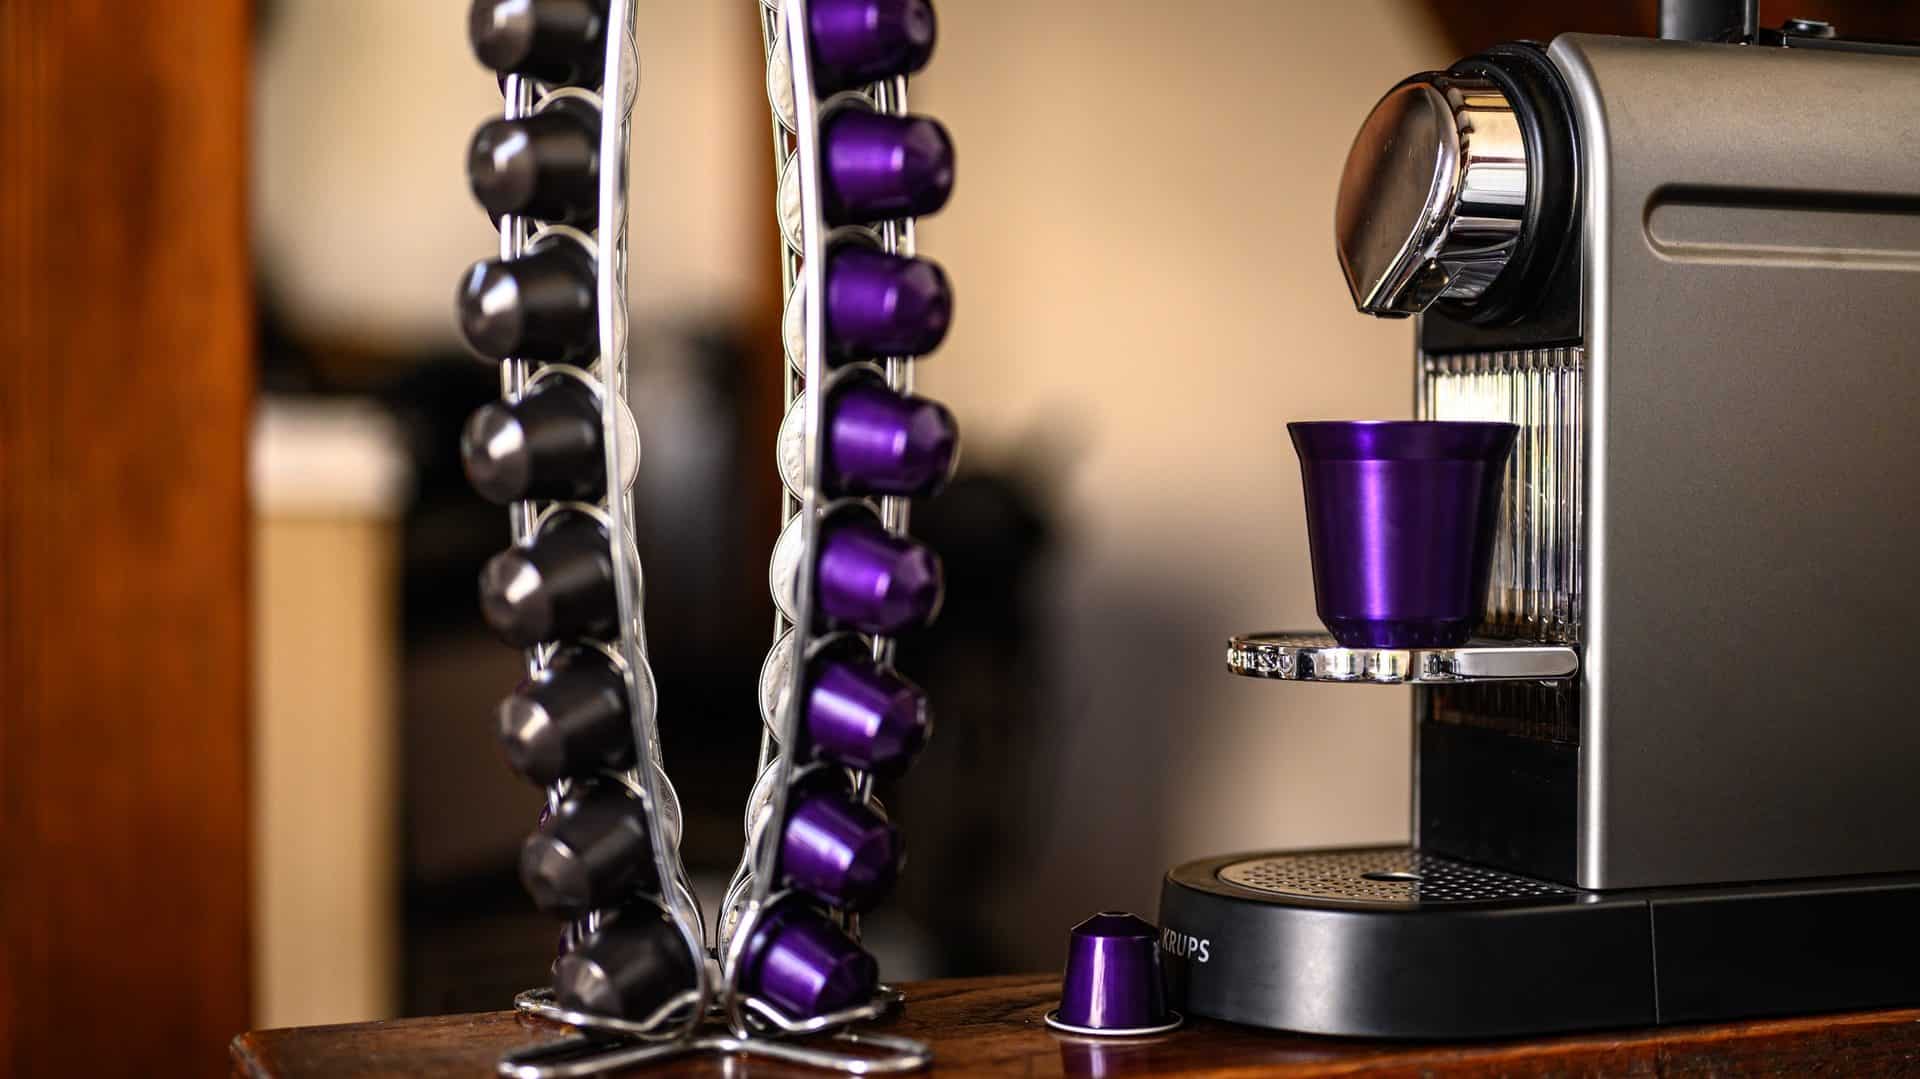 Nespresso-apparaat met paarse cups, vooraanzicht